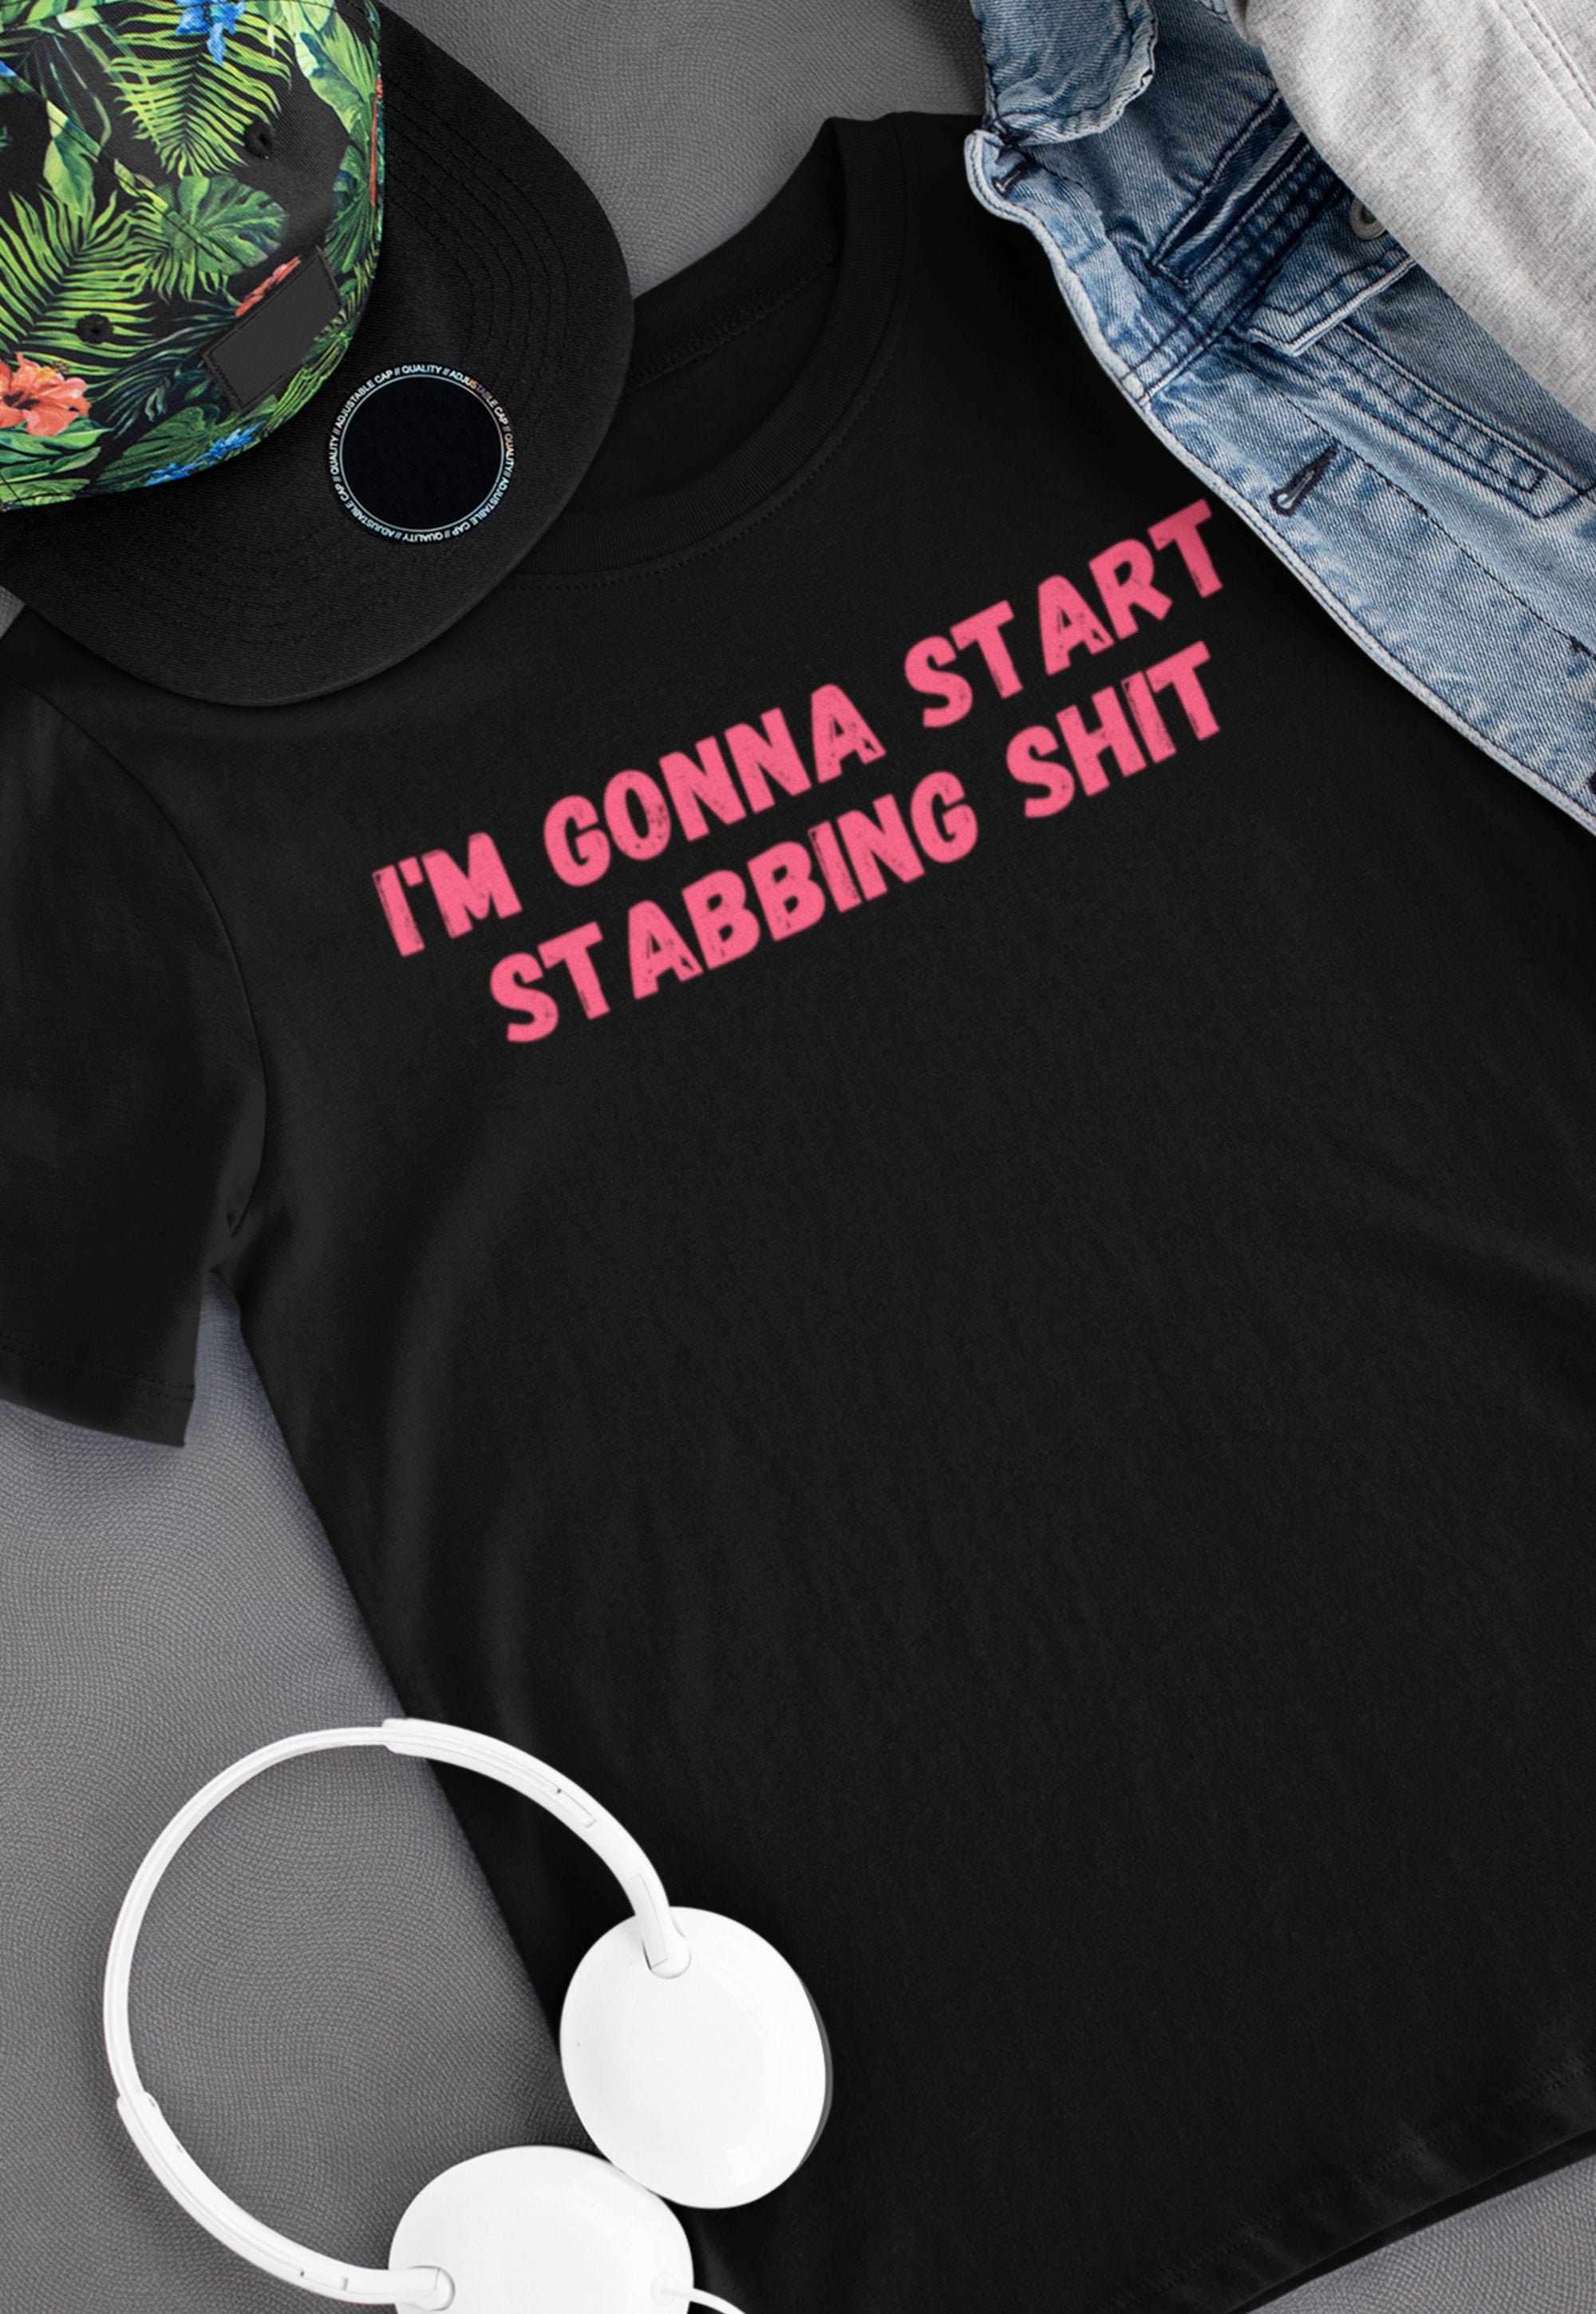 Tommyinnit shirt I'm gonna start stabbing shit | Etsy